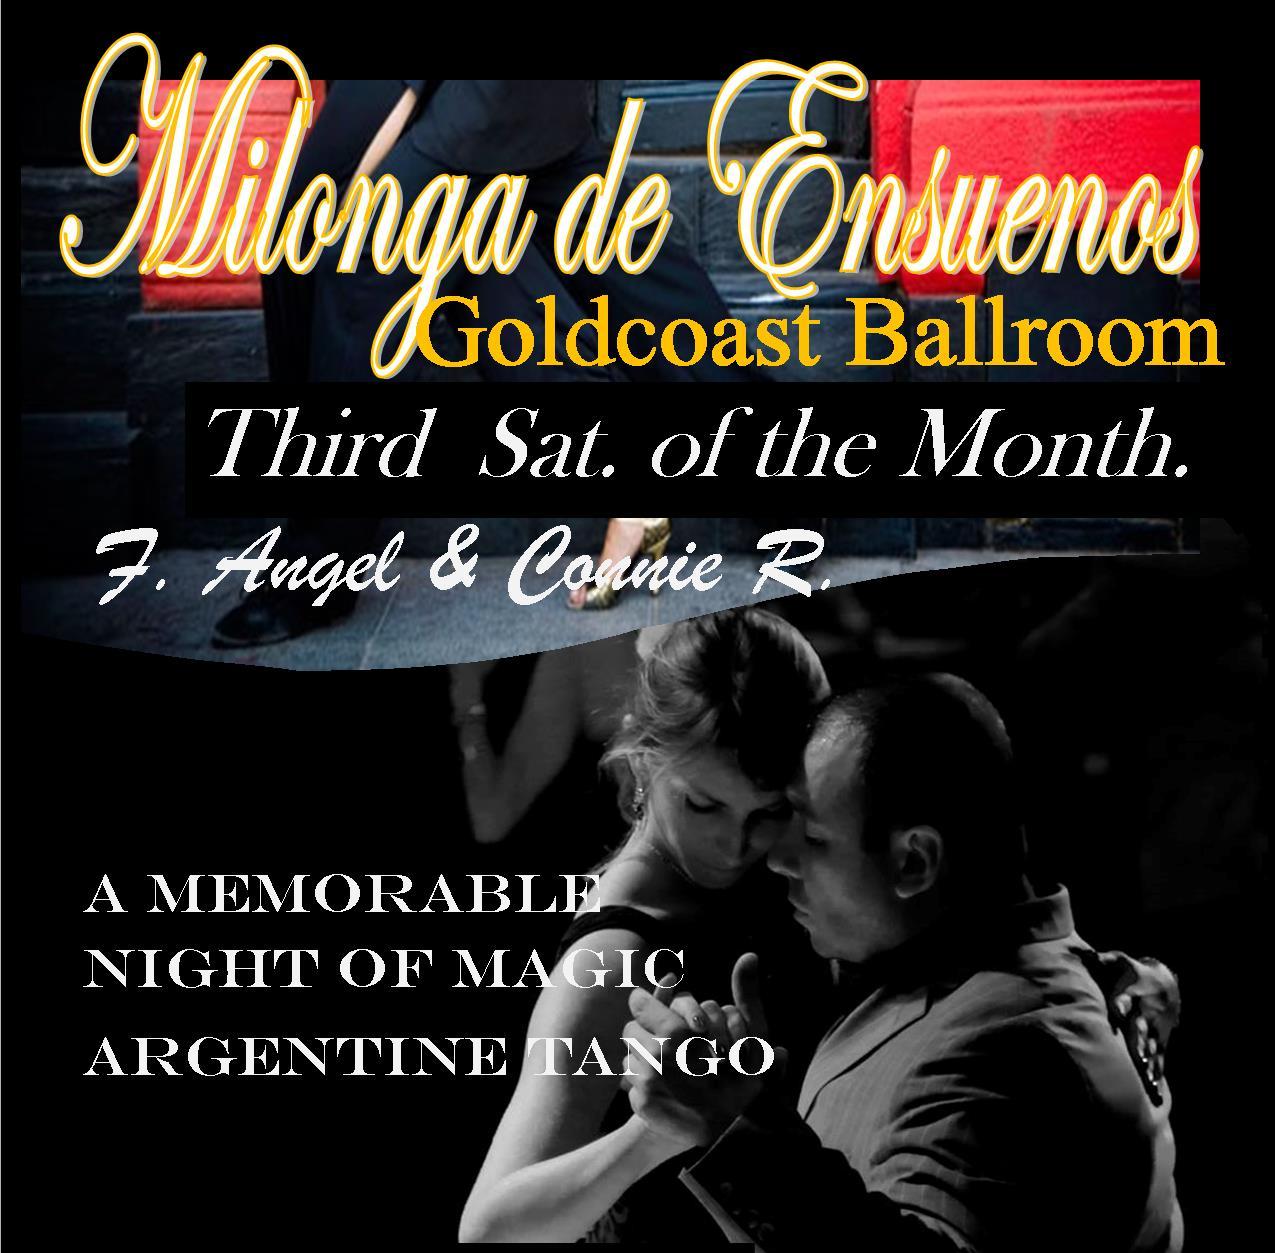 Milonga de Ensueños - Every Third Saturday of the Month